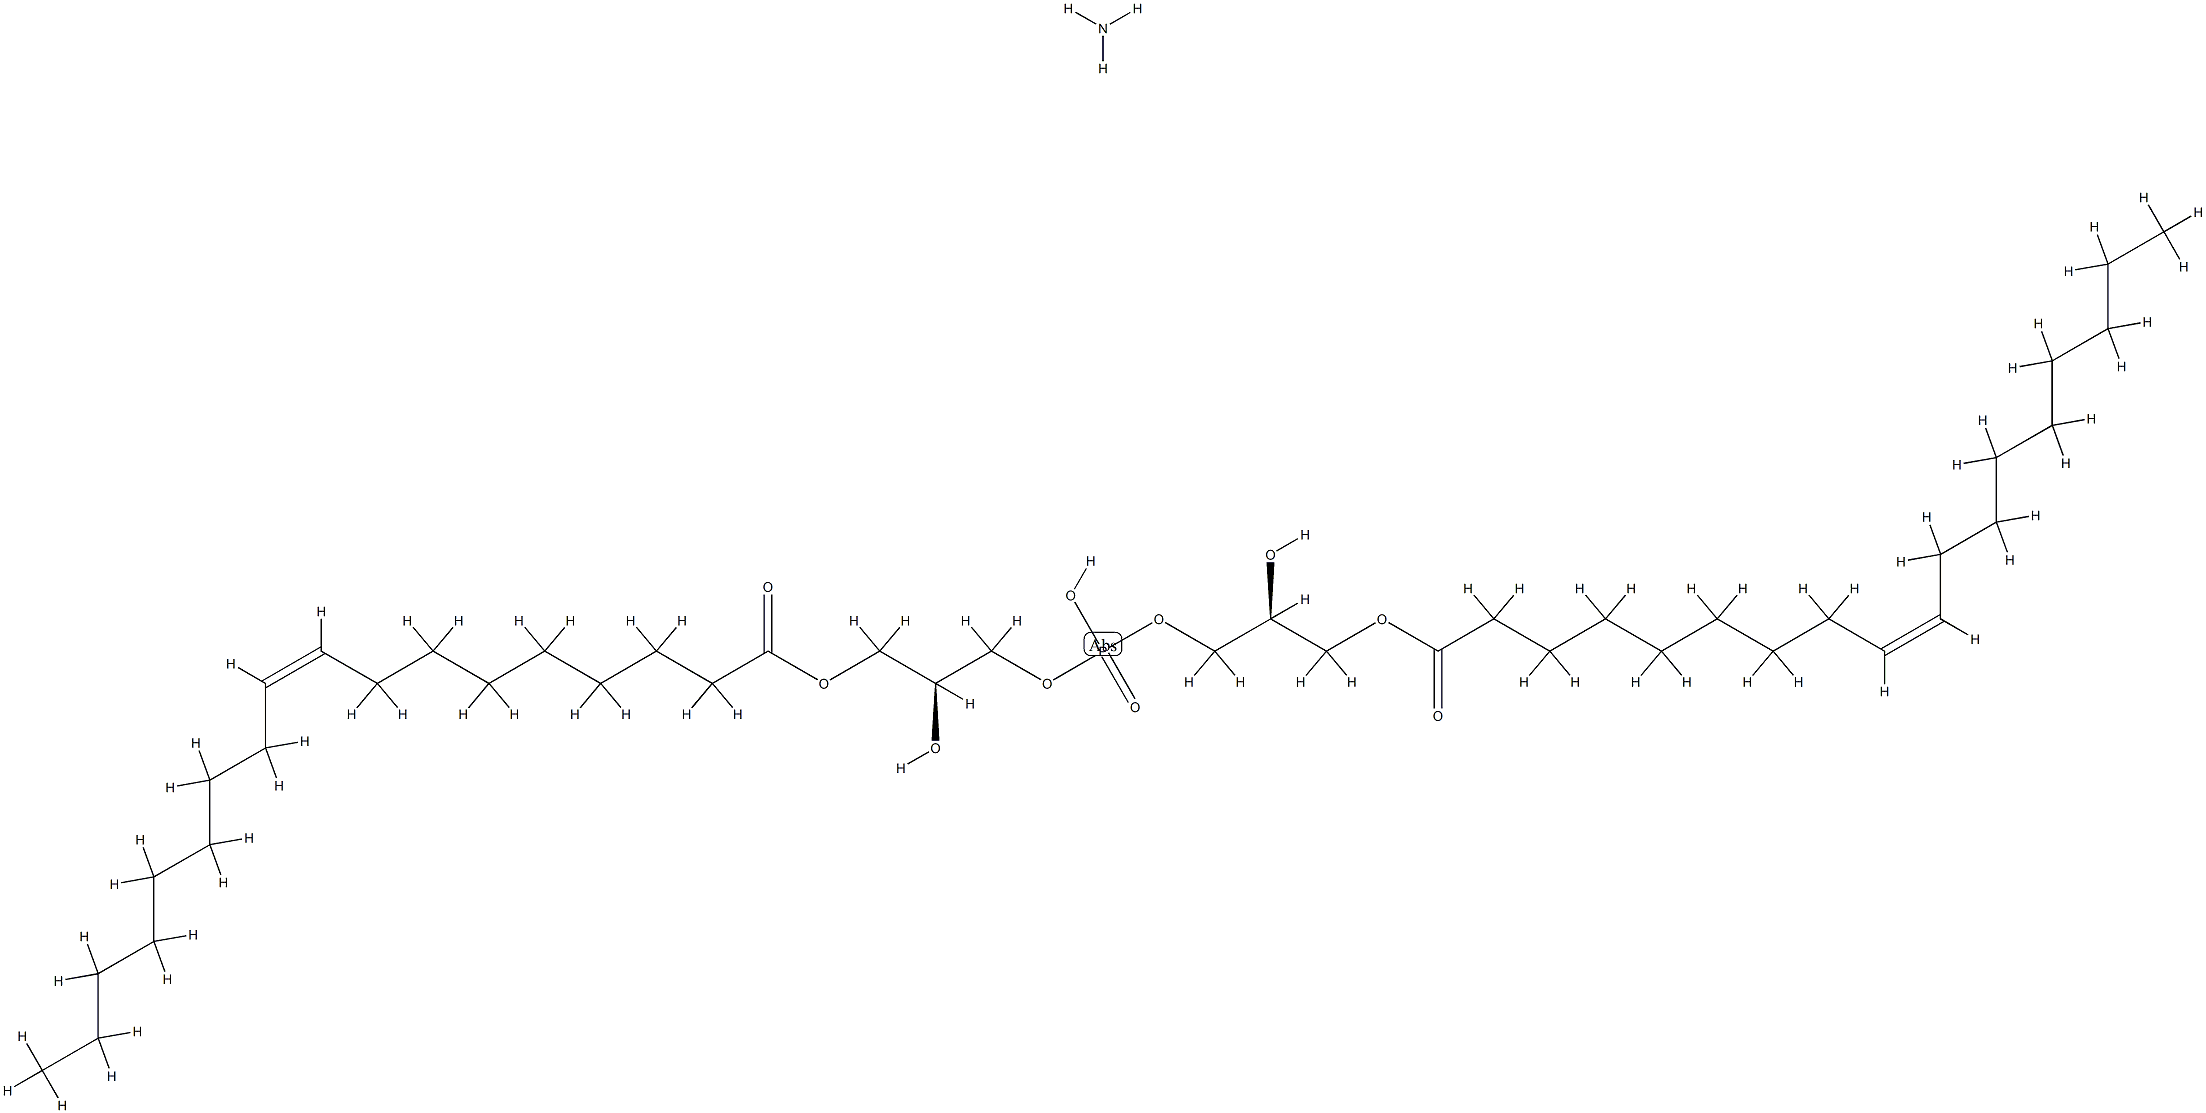 <I>sn</I>-(3-oleoyl-2-hydroxy)-glycerol-1-phospho-<I>sn</I>-1'-(3'-oleoyl-2'-hydroxy)-glycerol (aMMoniuM salt)|<I>SN</I>-(3-OLEOYL-2-HYDROXY)-GLYCEROL-1-PHOSPHO-<I>SN</I>-1'-(3'-OLEOYL-2'-HYDROXY)-GLYCEROL (AMMONIUM SALT);18:1 BMP (S;S)